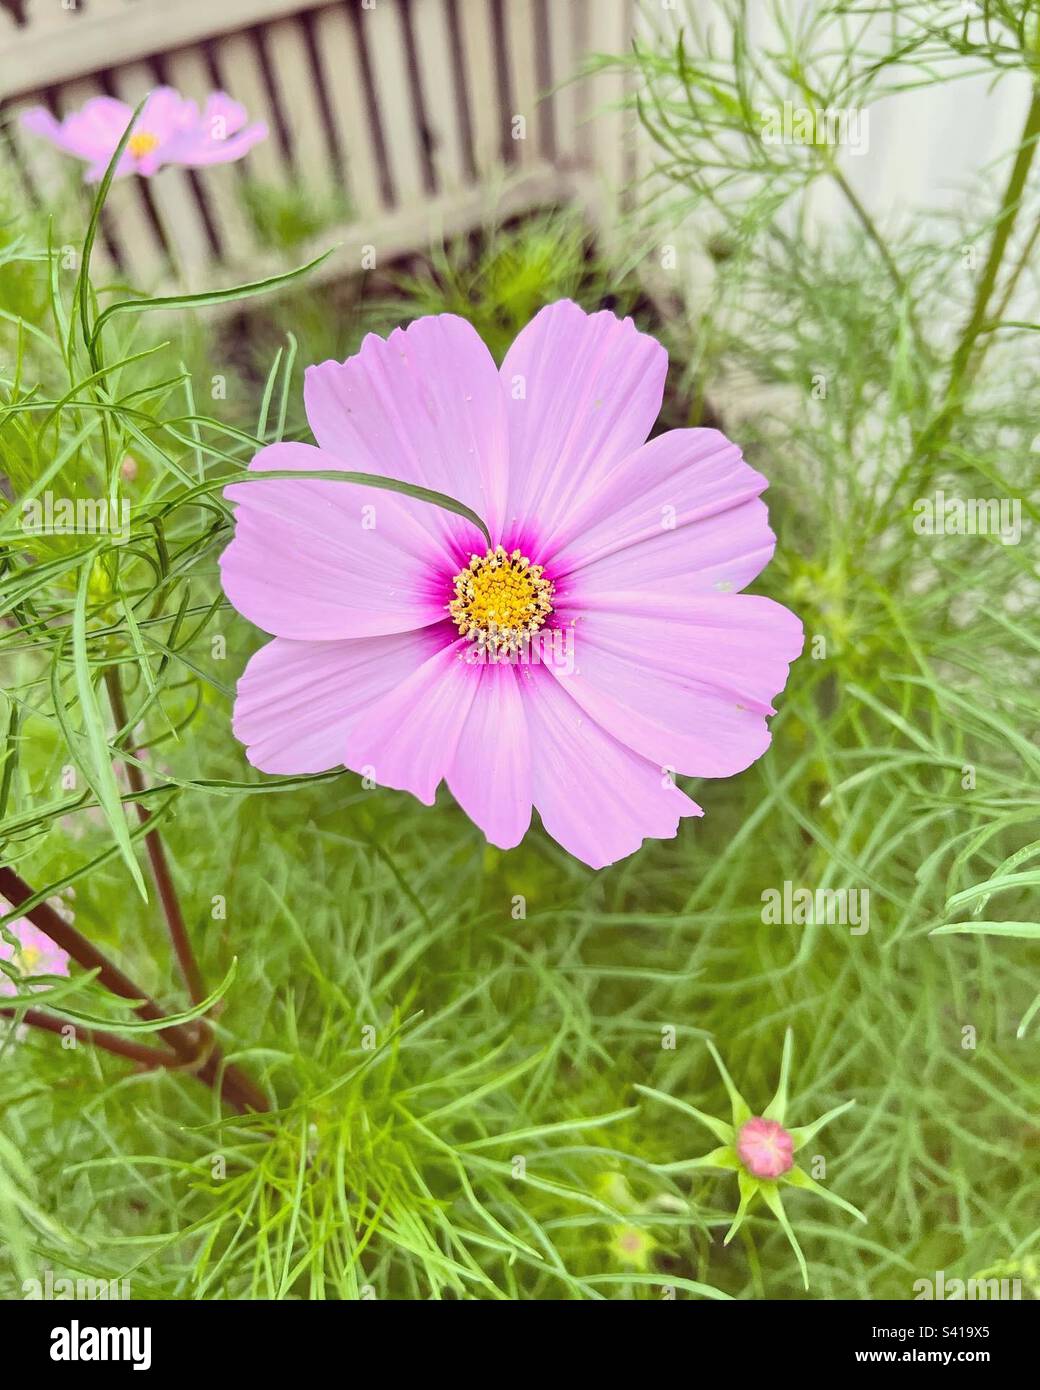 Cosmos flower Stock Photo